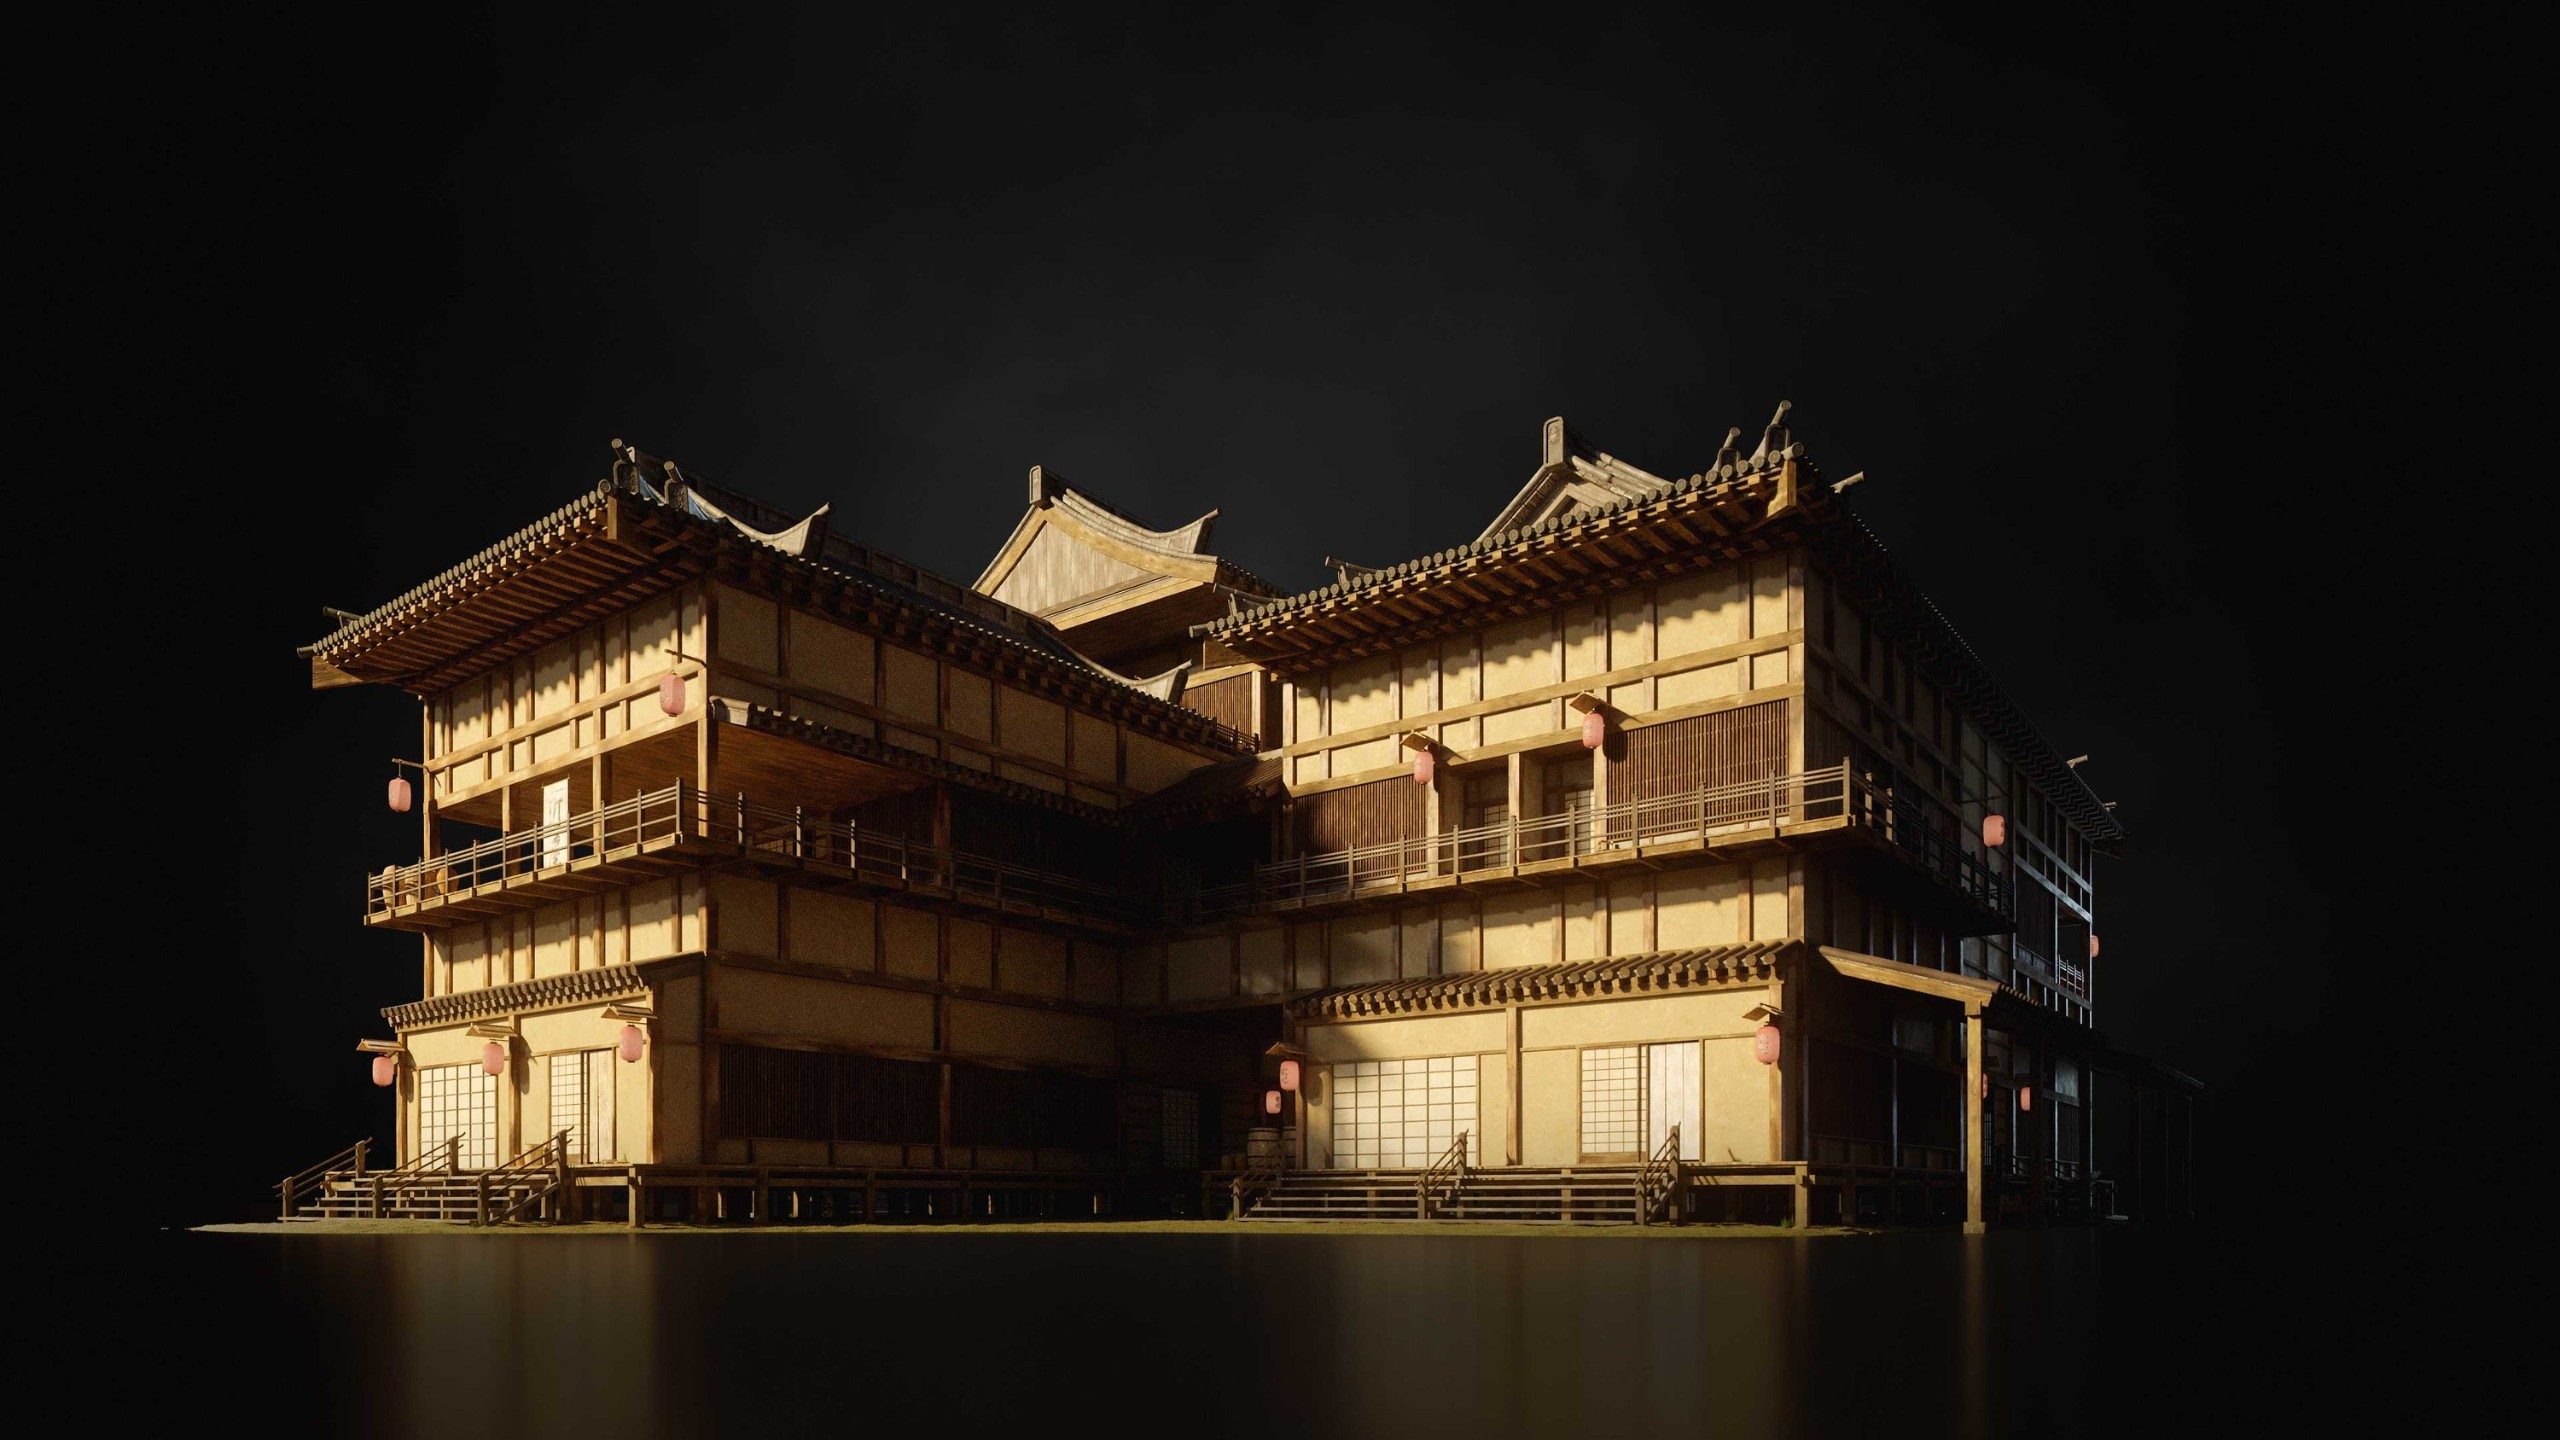 日本幕府封建社会古代建筑大图模型日本建筑模型日式建筑模型YC163